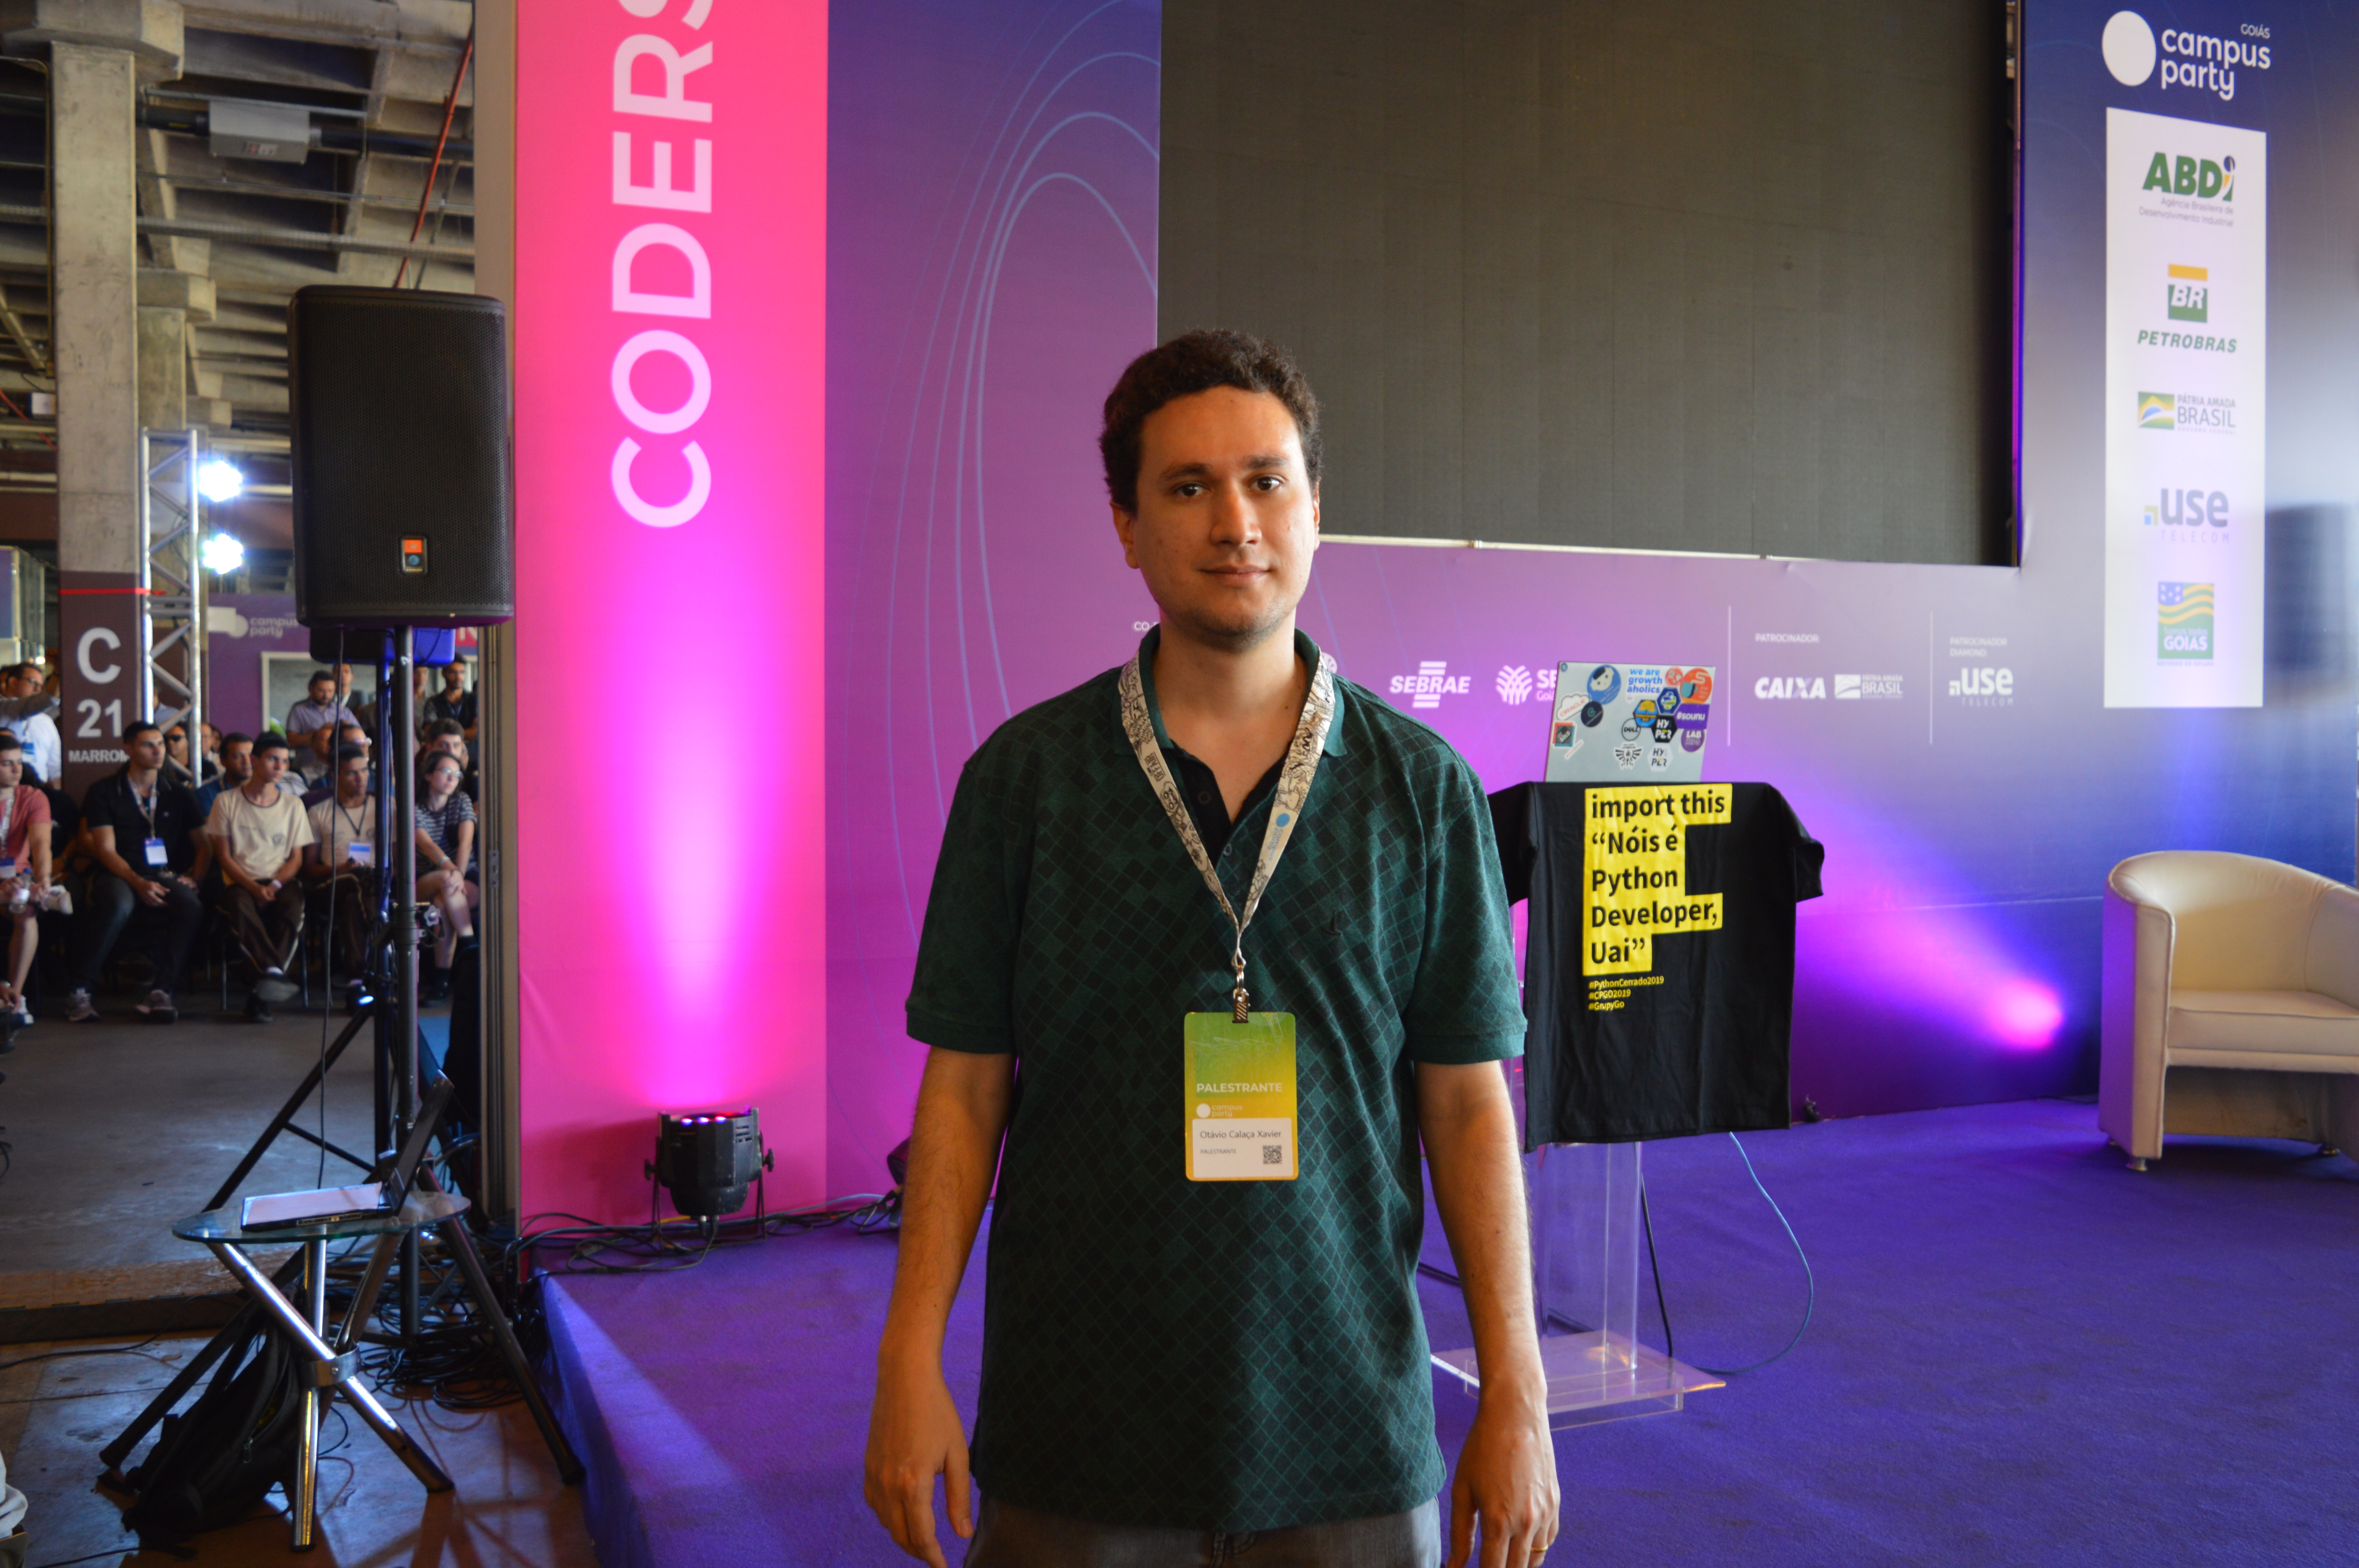 Professor Otávio Calaça vai abordar o tema Data Science em diversas atividades durante a Campus Party Goiás